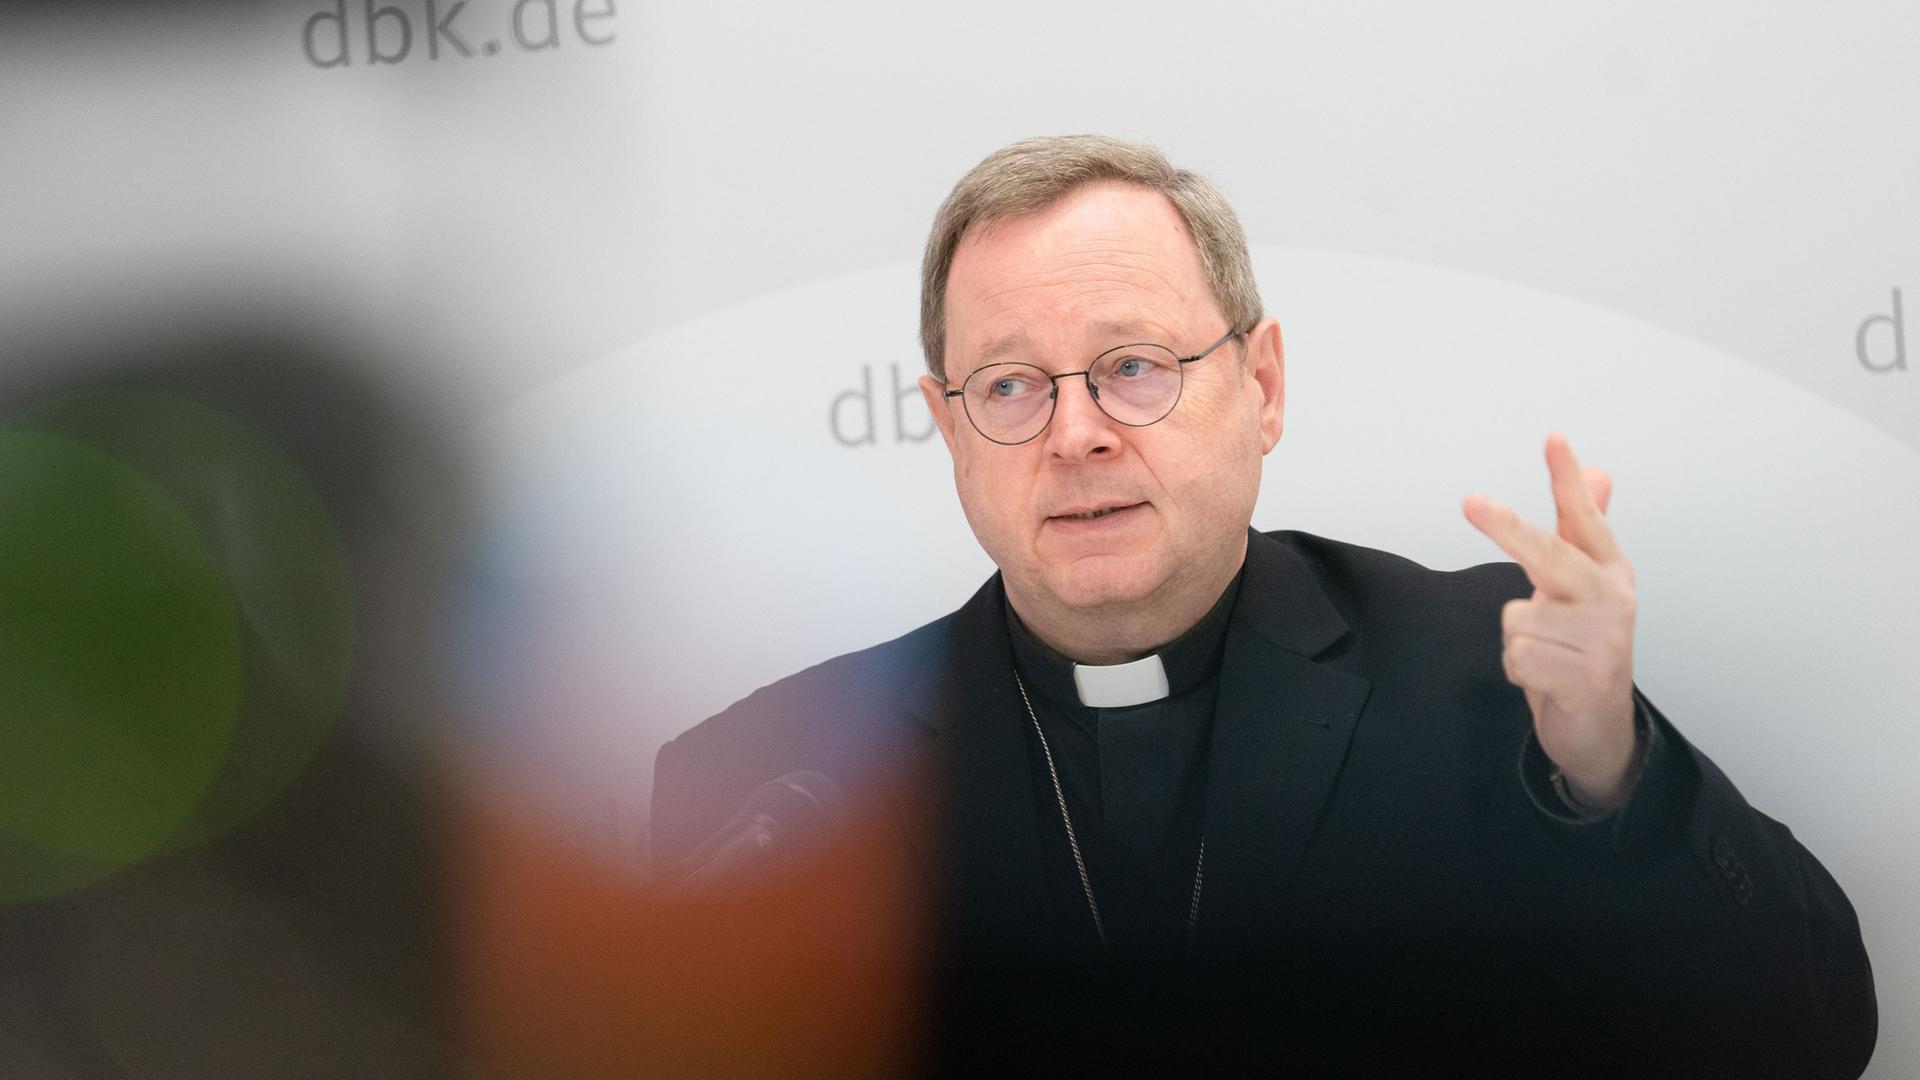 Bischof Georg Bätzing - "Ich gebe zu, ja, der Papst enttäuscht mich auch"